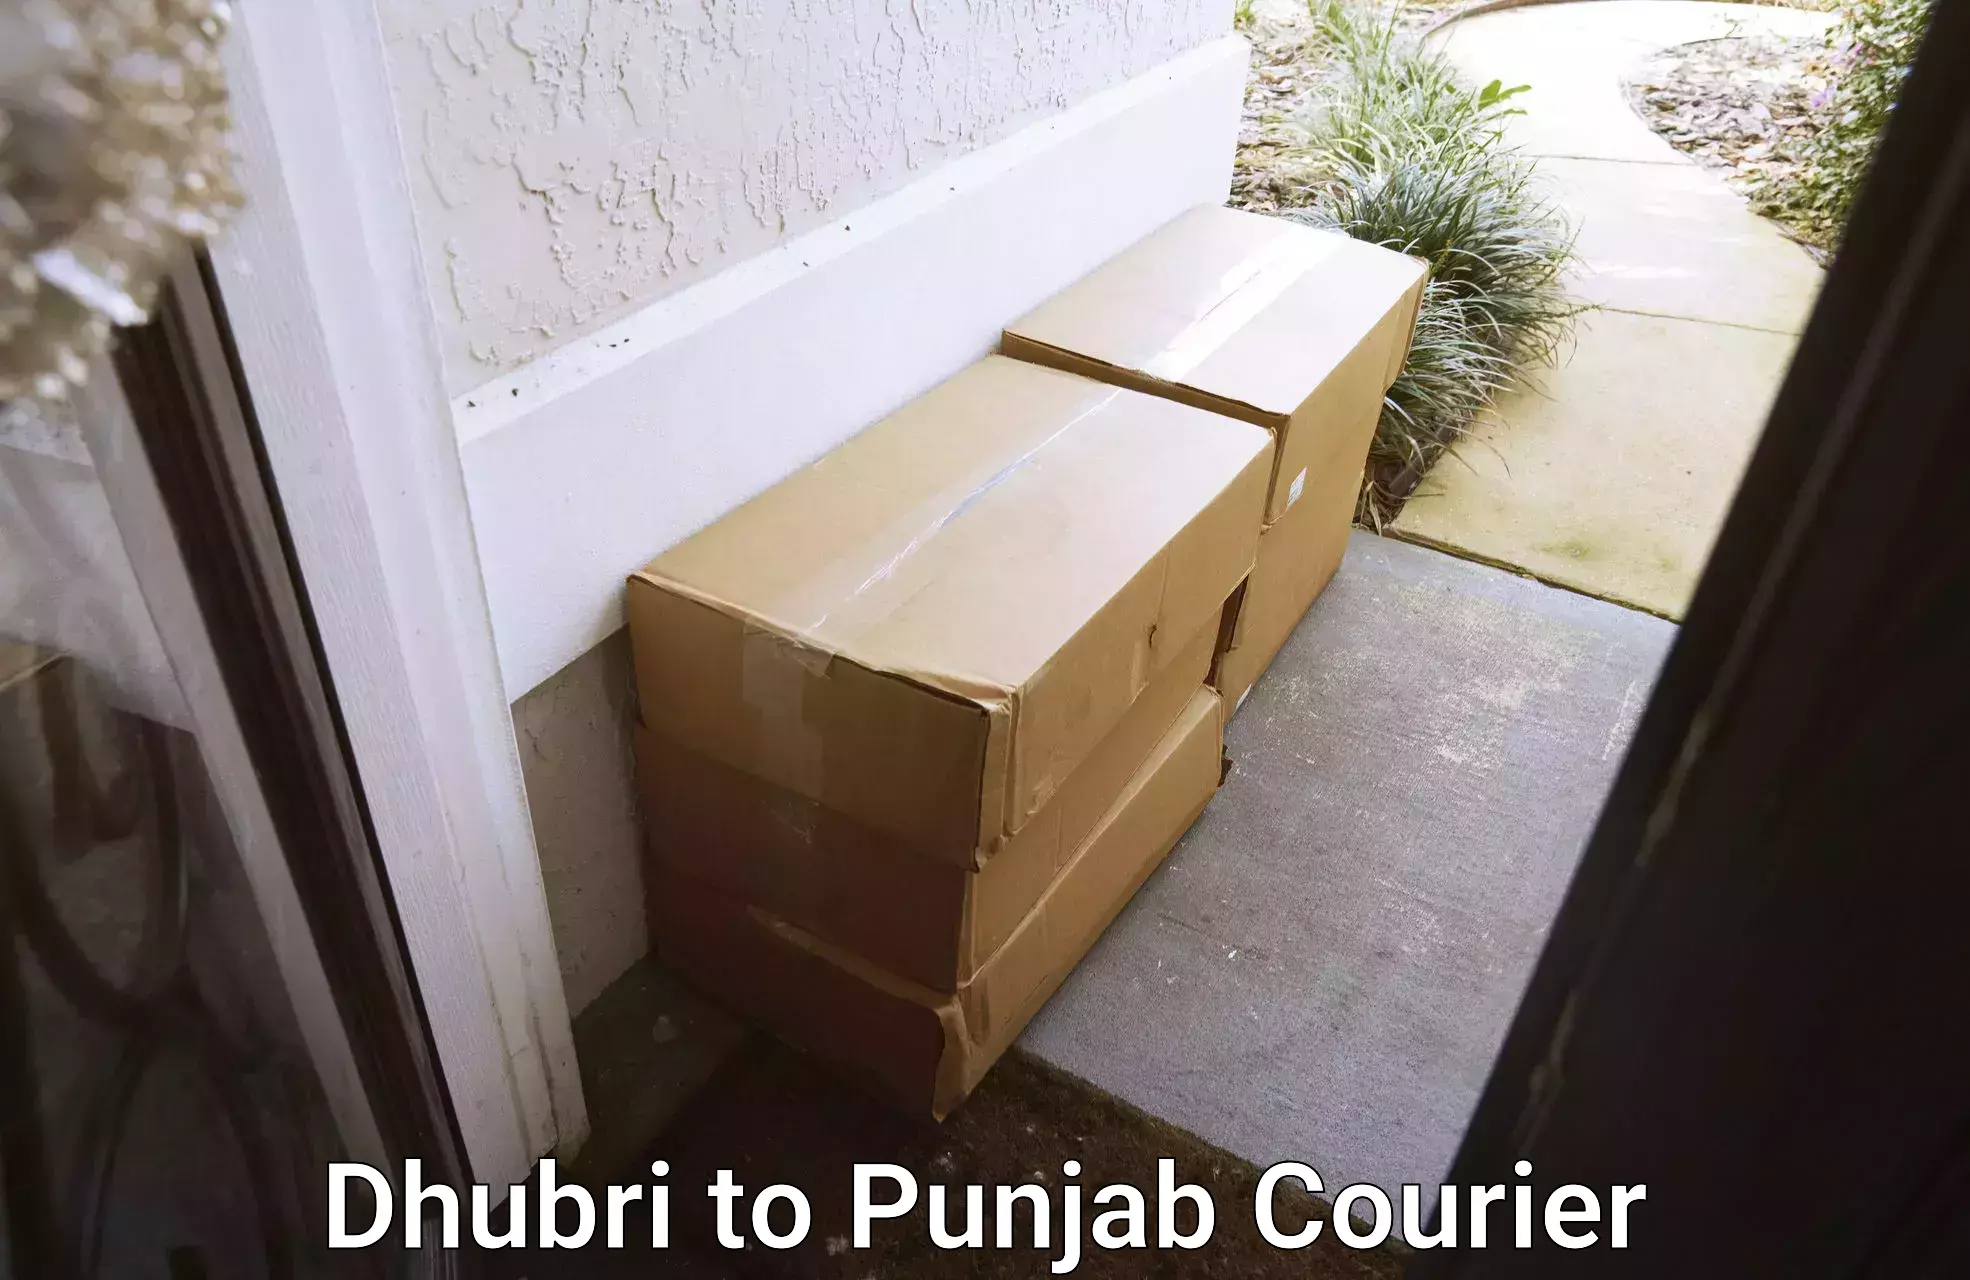 Package delivery network Dhubri to Jalandhar